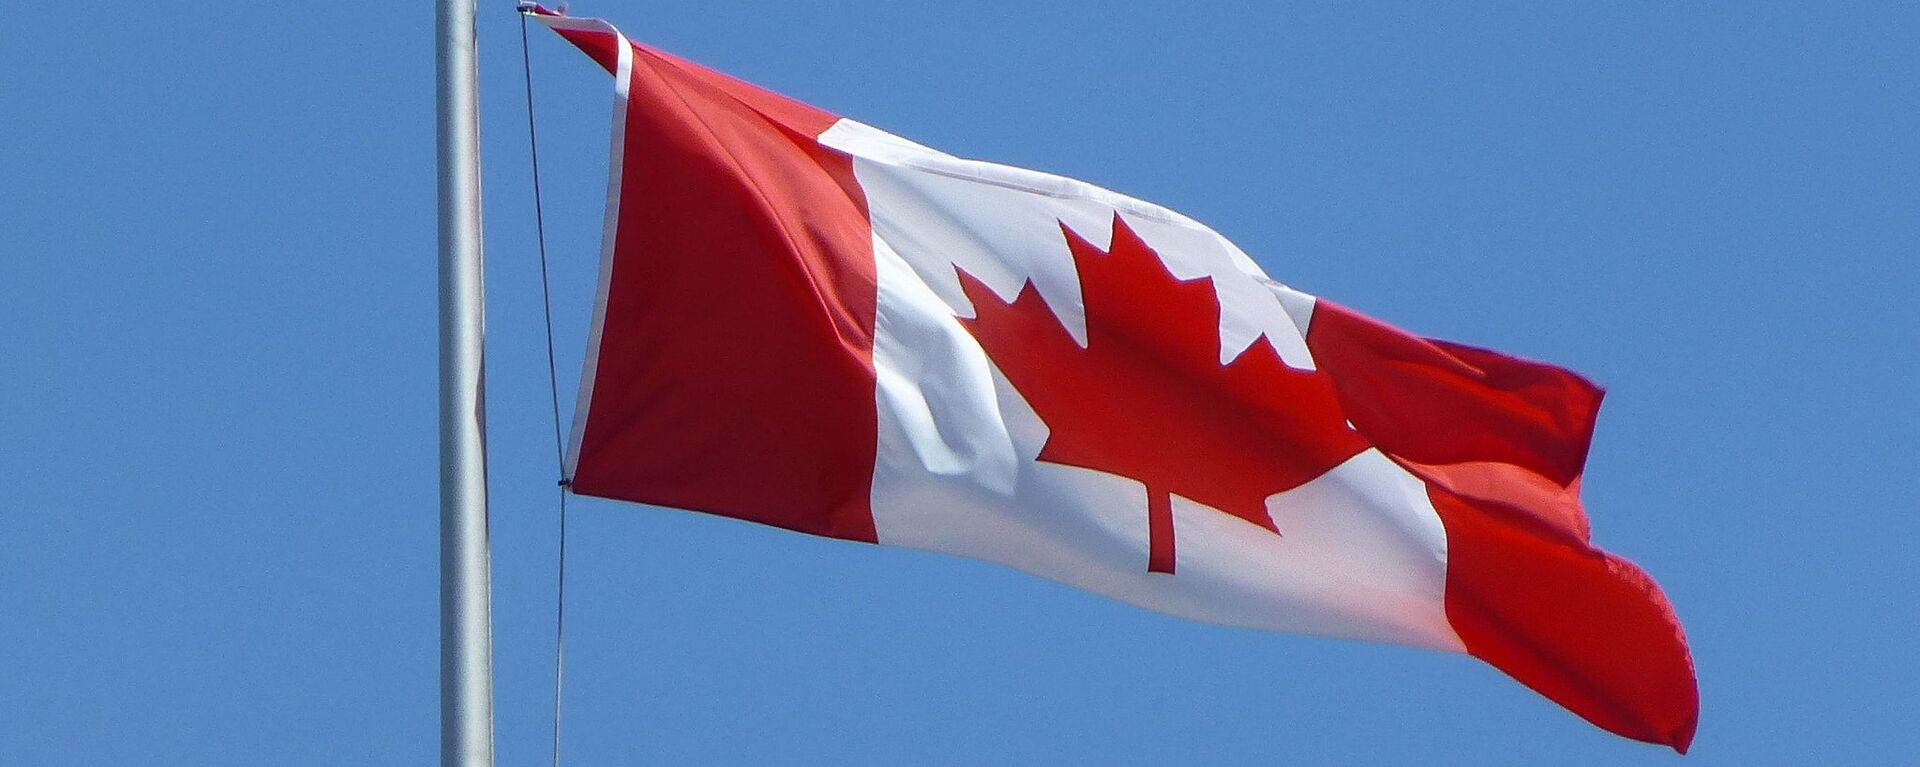 Canadian flag - Sputnik International, 1920, 29.06.2021